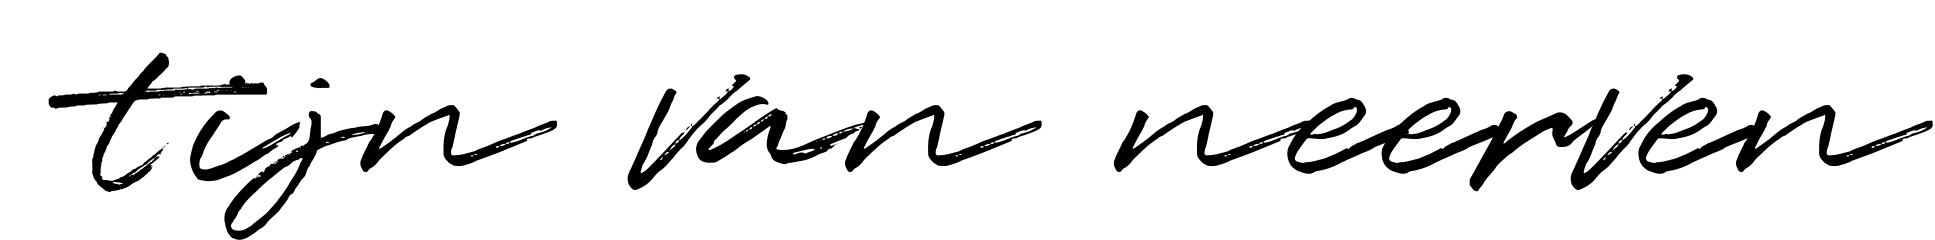 Tijn-Sign-Logo